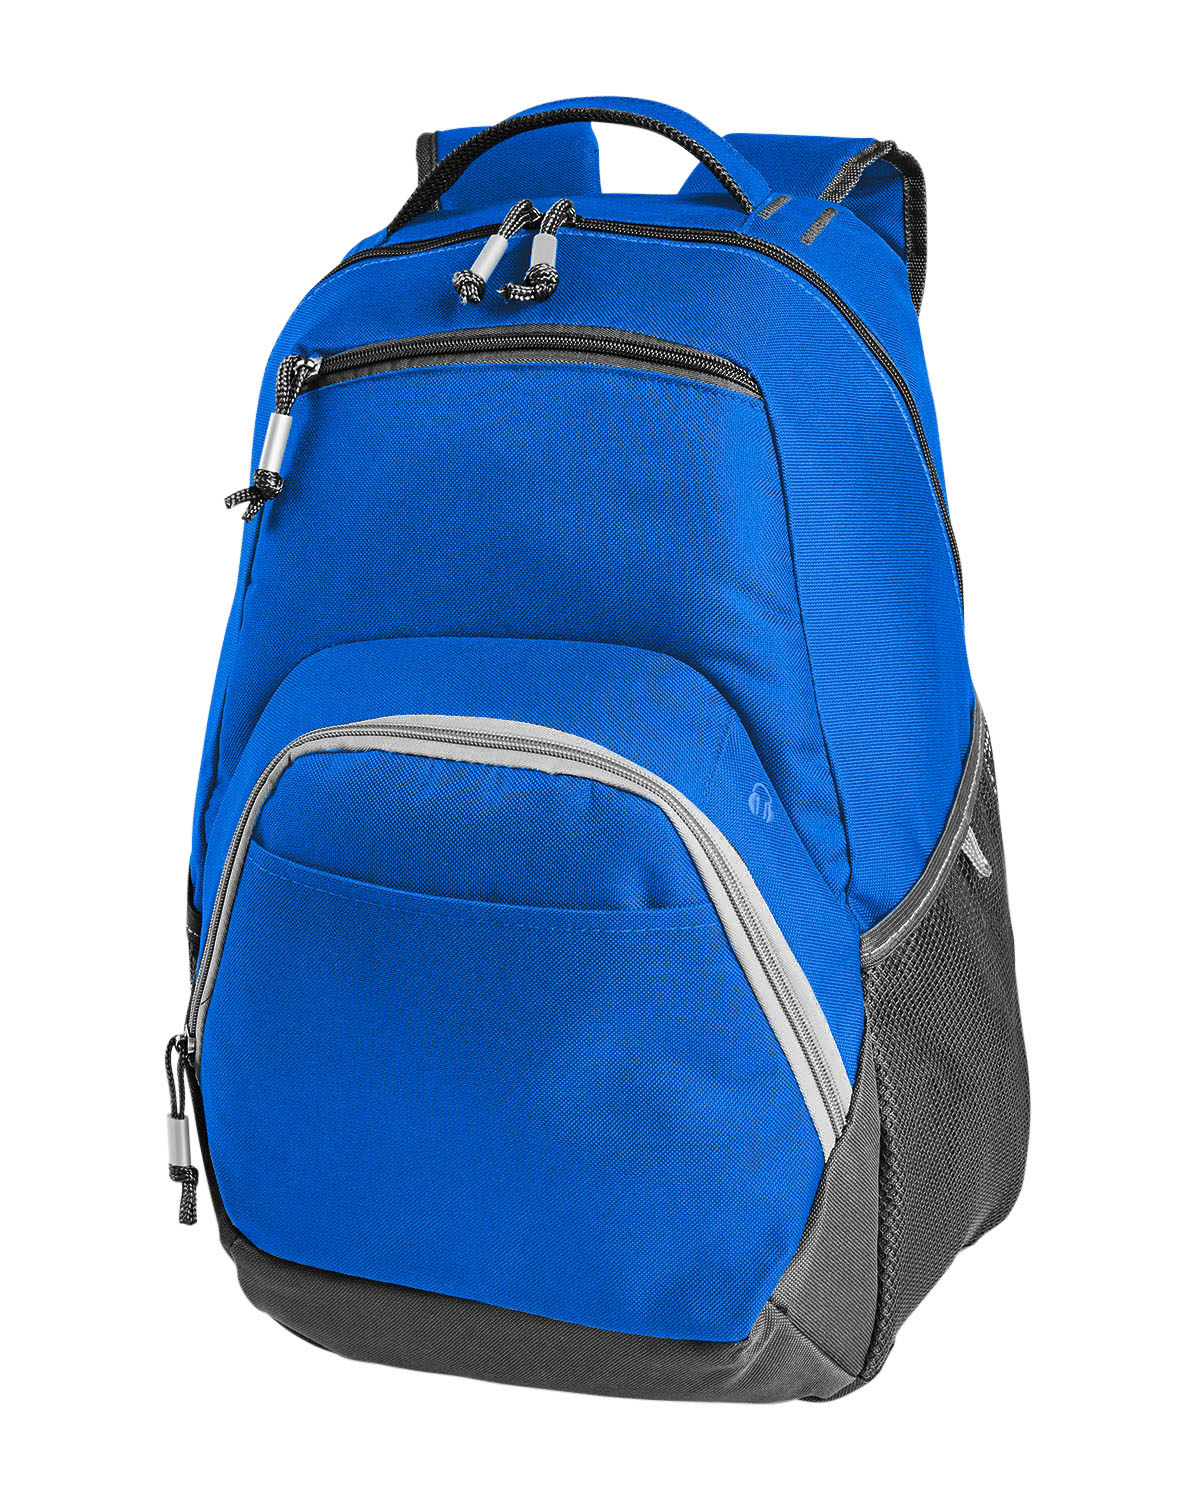 'Gemline 5400 Rangeley Computer Backpack'